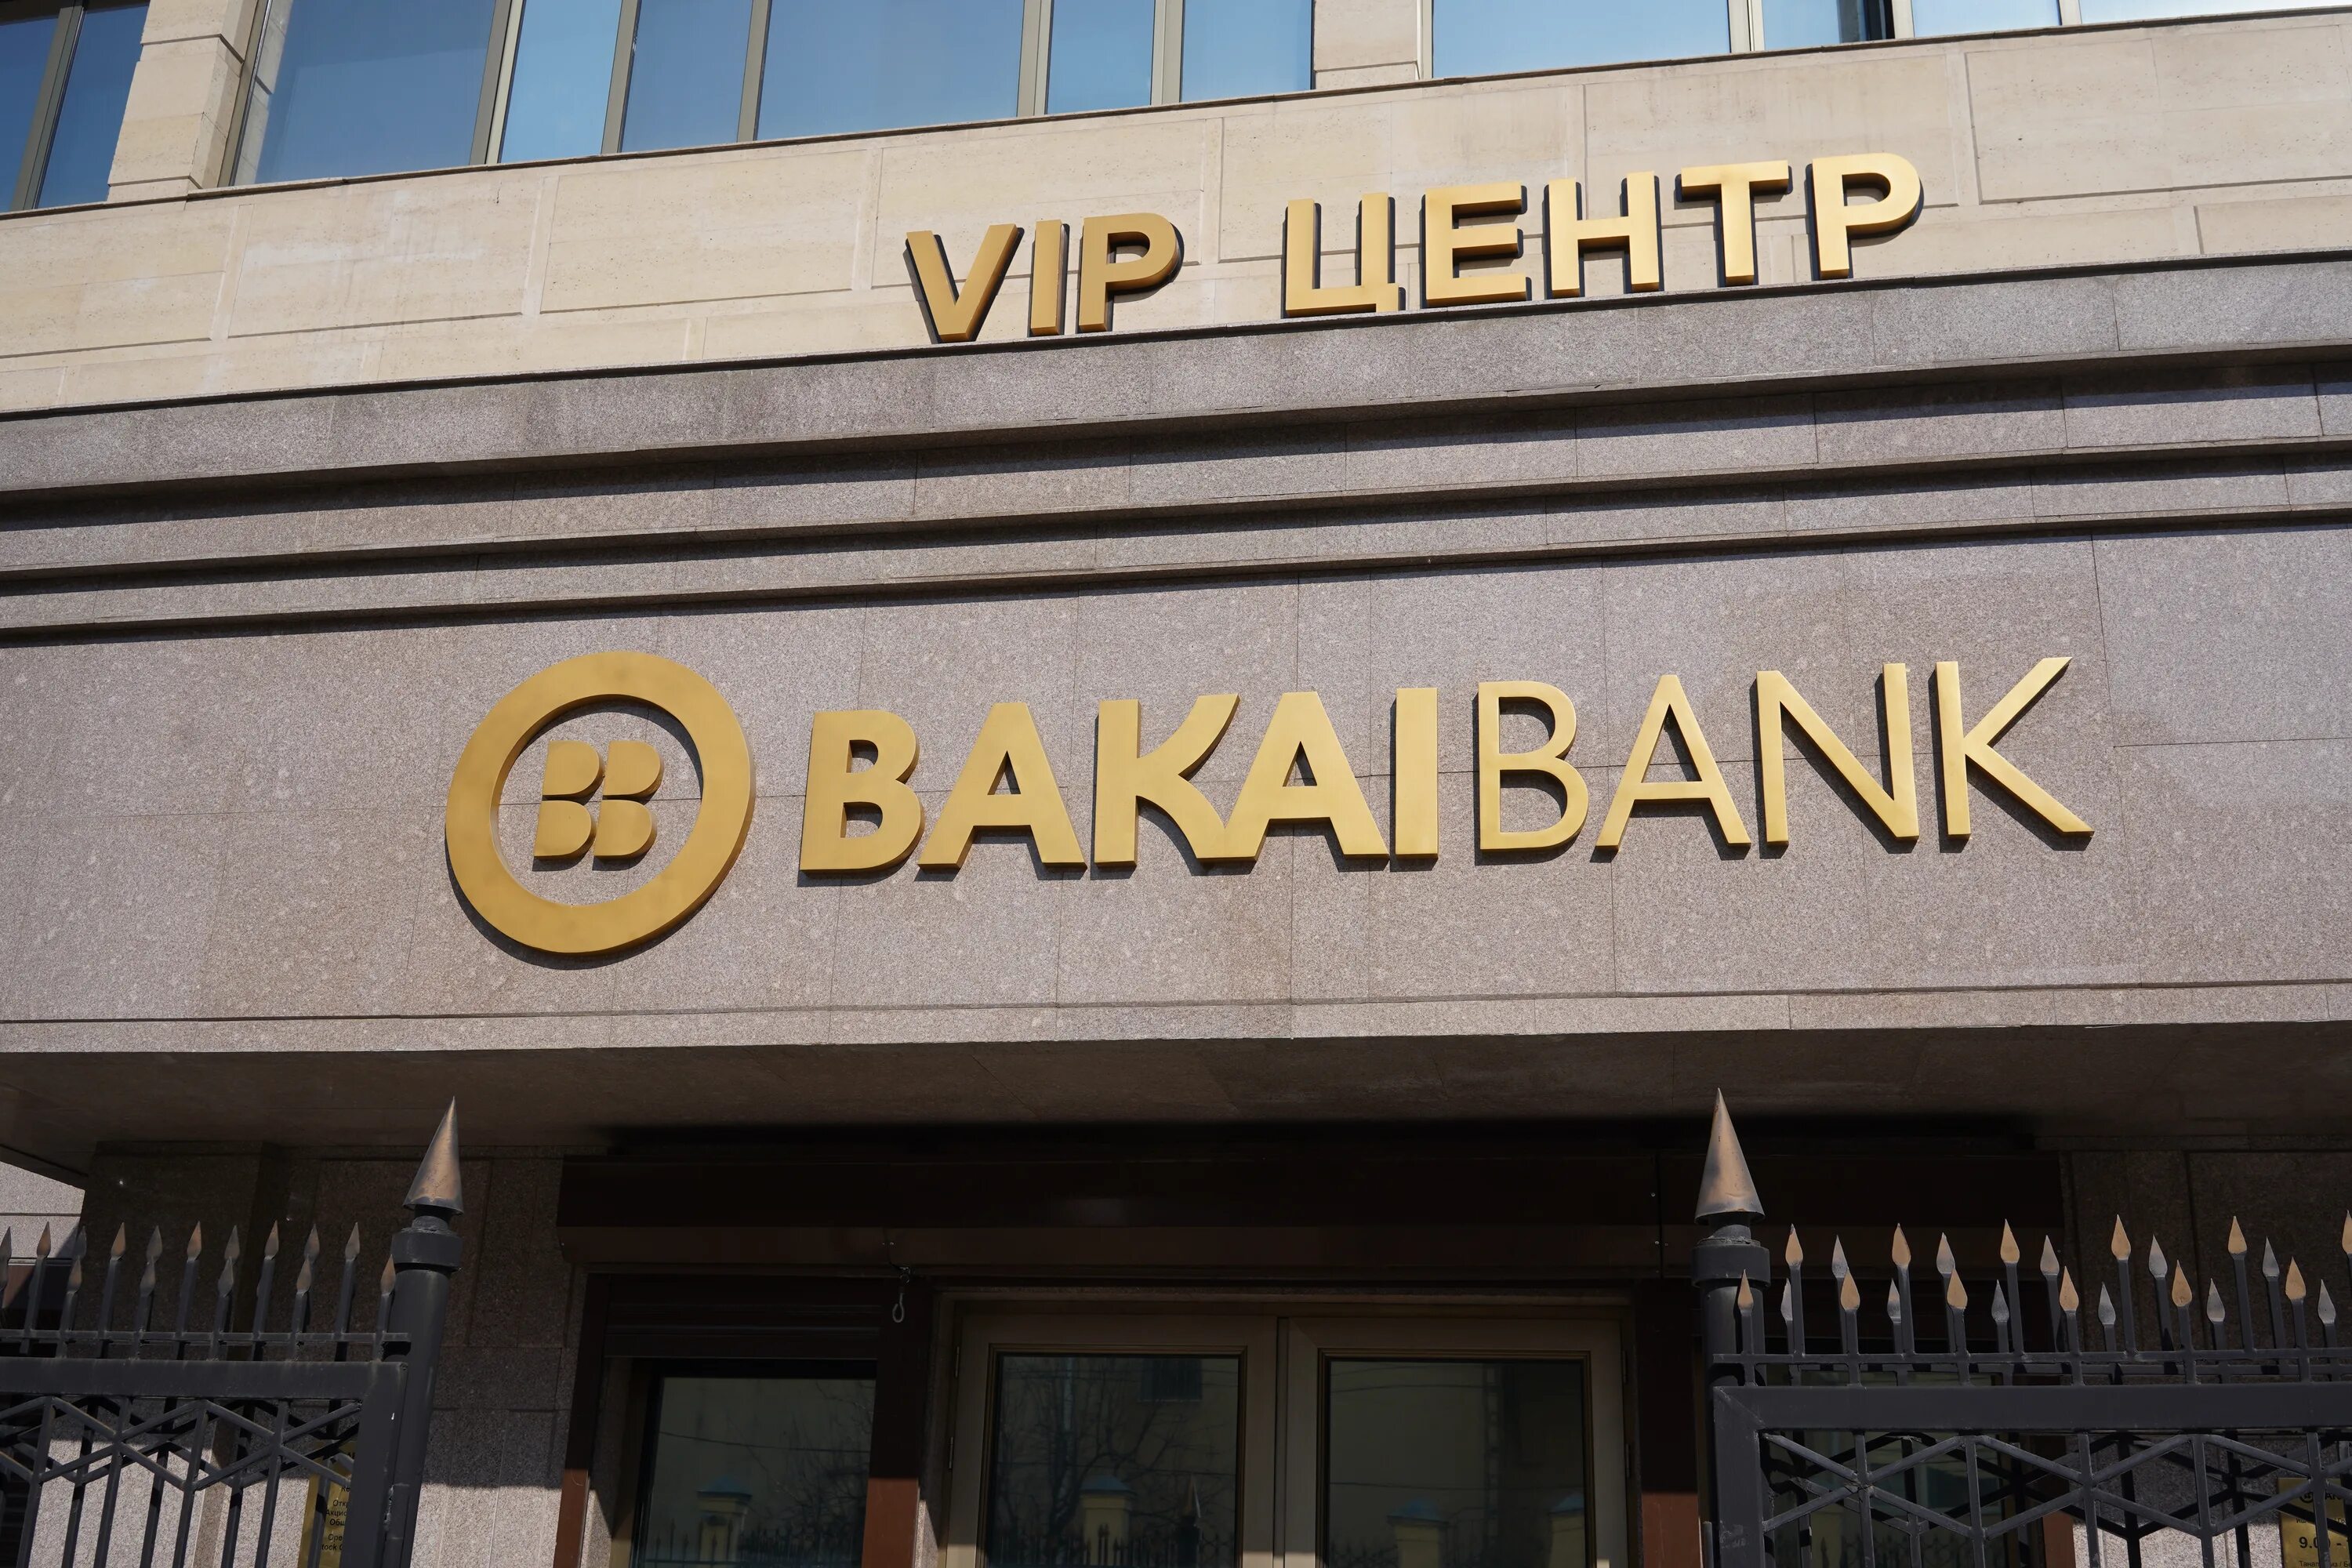 Bank kyrgyzstan. Бакай банк. Банки Кыргызстана. Банк Бишкек. Банка Киргизии, Бакай банк.